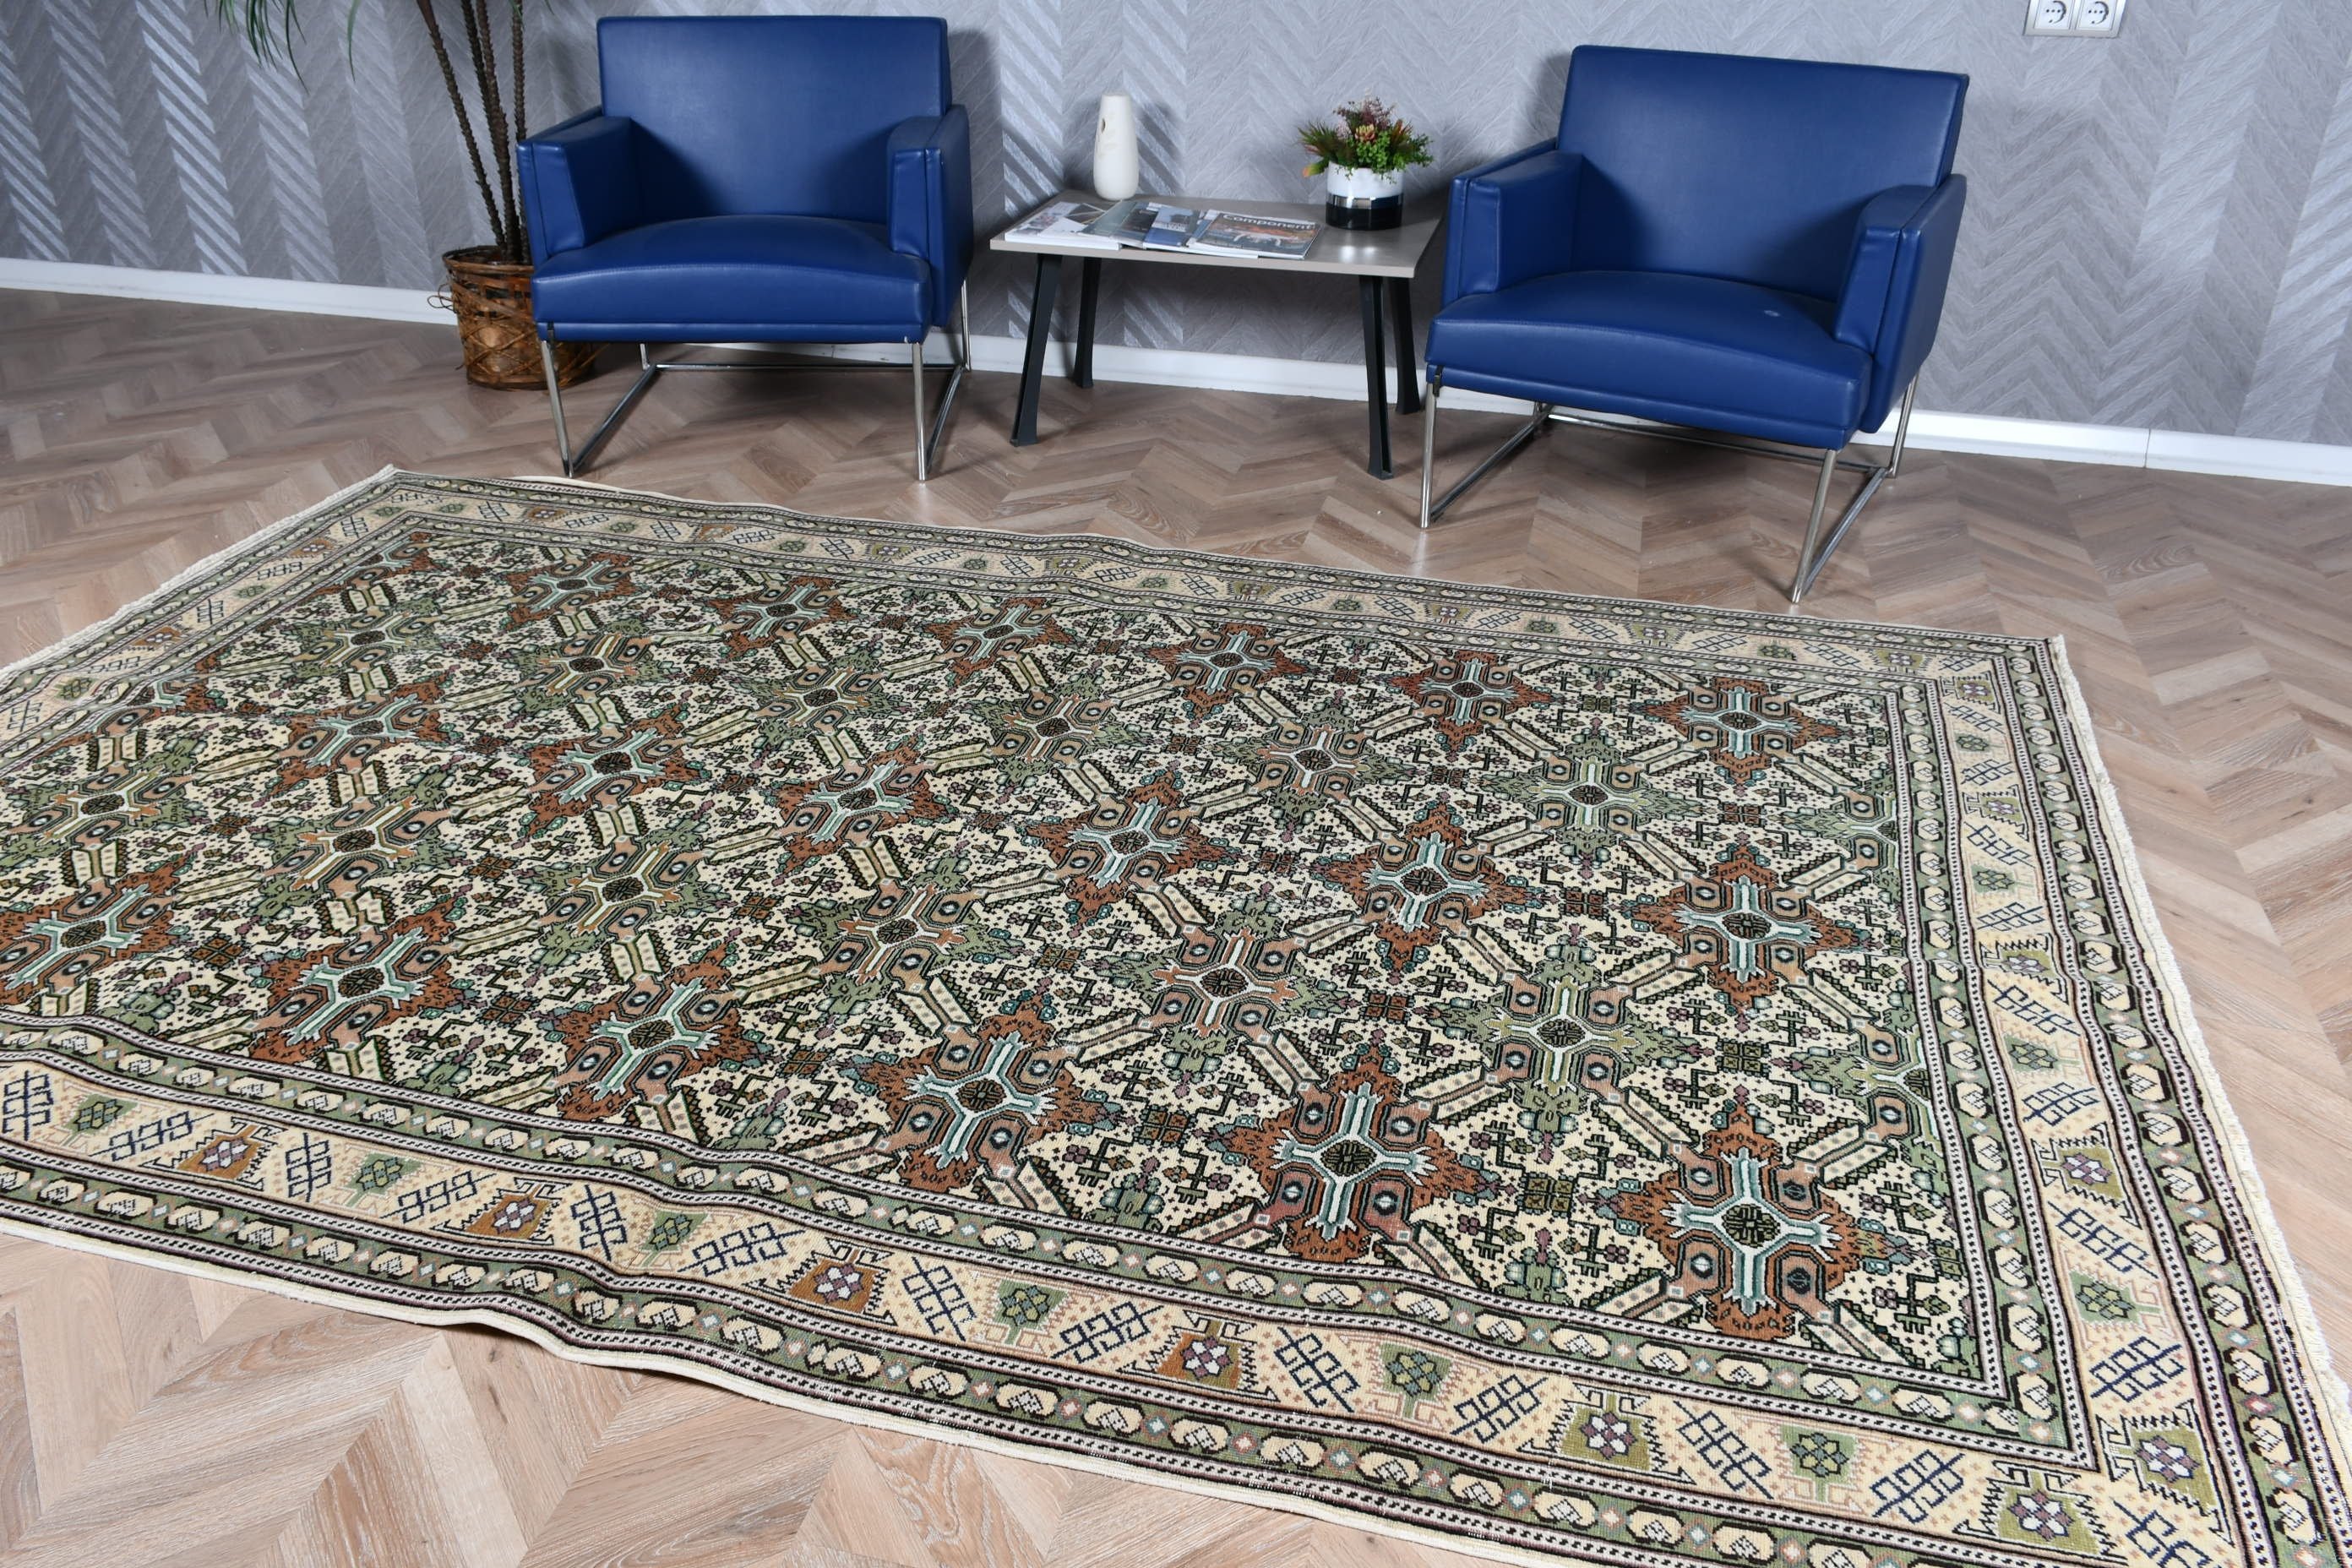 Turkish Rug, Cool Rug, Floor Rugs, Vintage Rugs, Boho Rugs, 6.2x9.6 ft Large Rugs, Bedroom Rug, Green Antique Rugs, Dining Room Rug